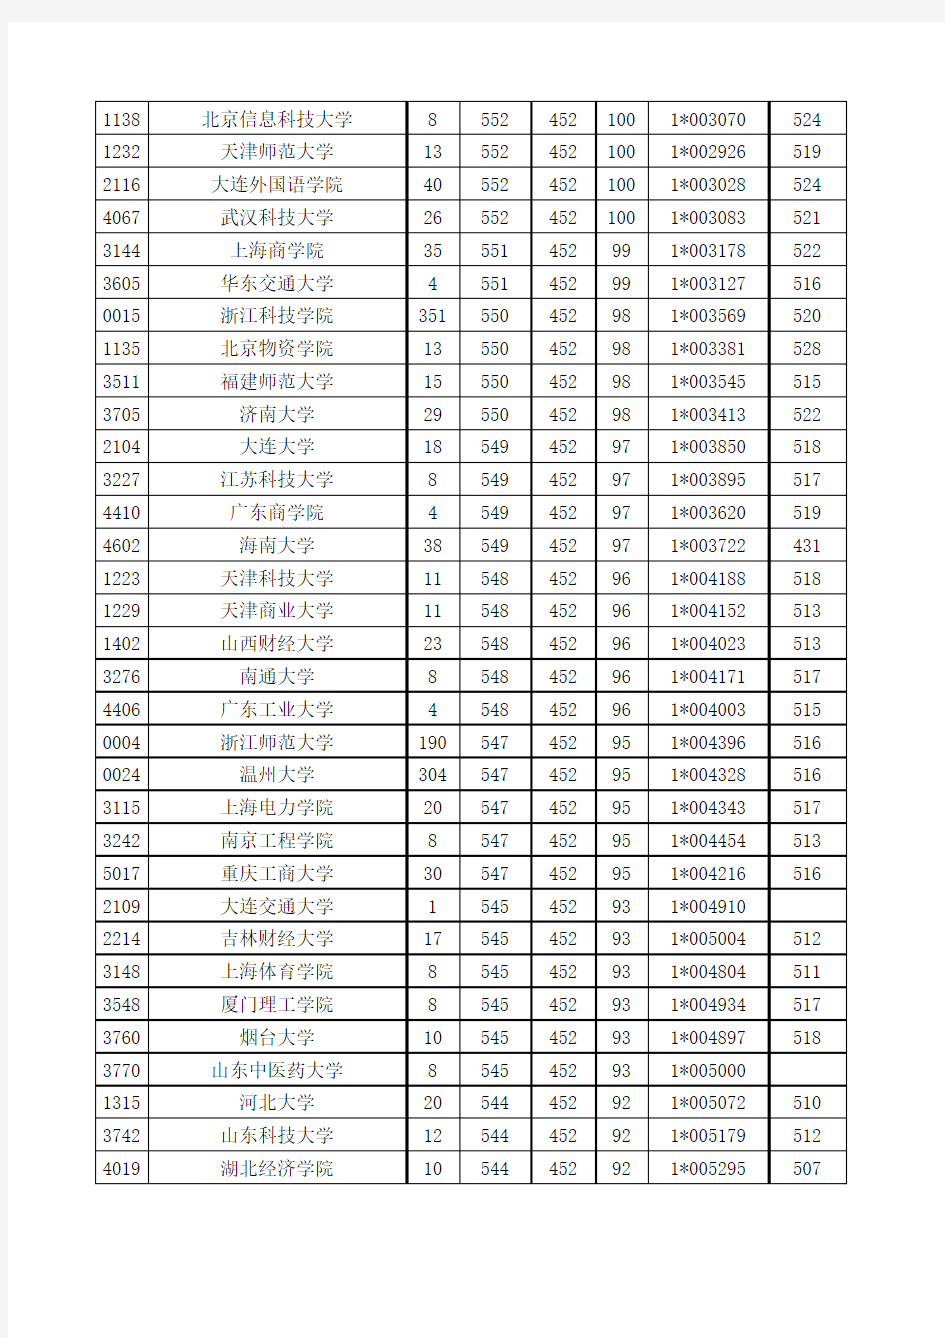 浙江省2010、2011、2012年文科第二批首轮平行志愿投档分数线